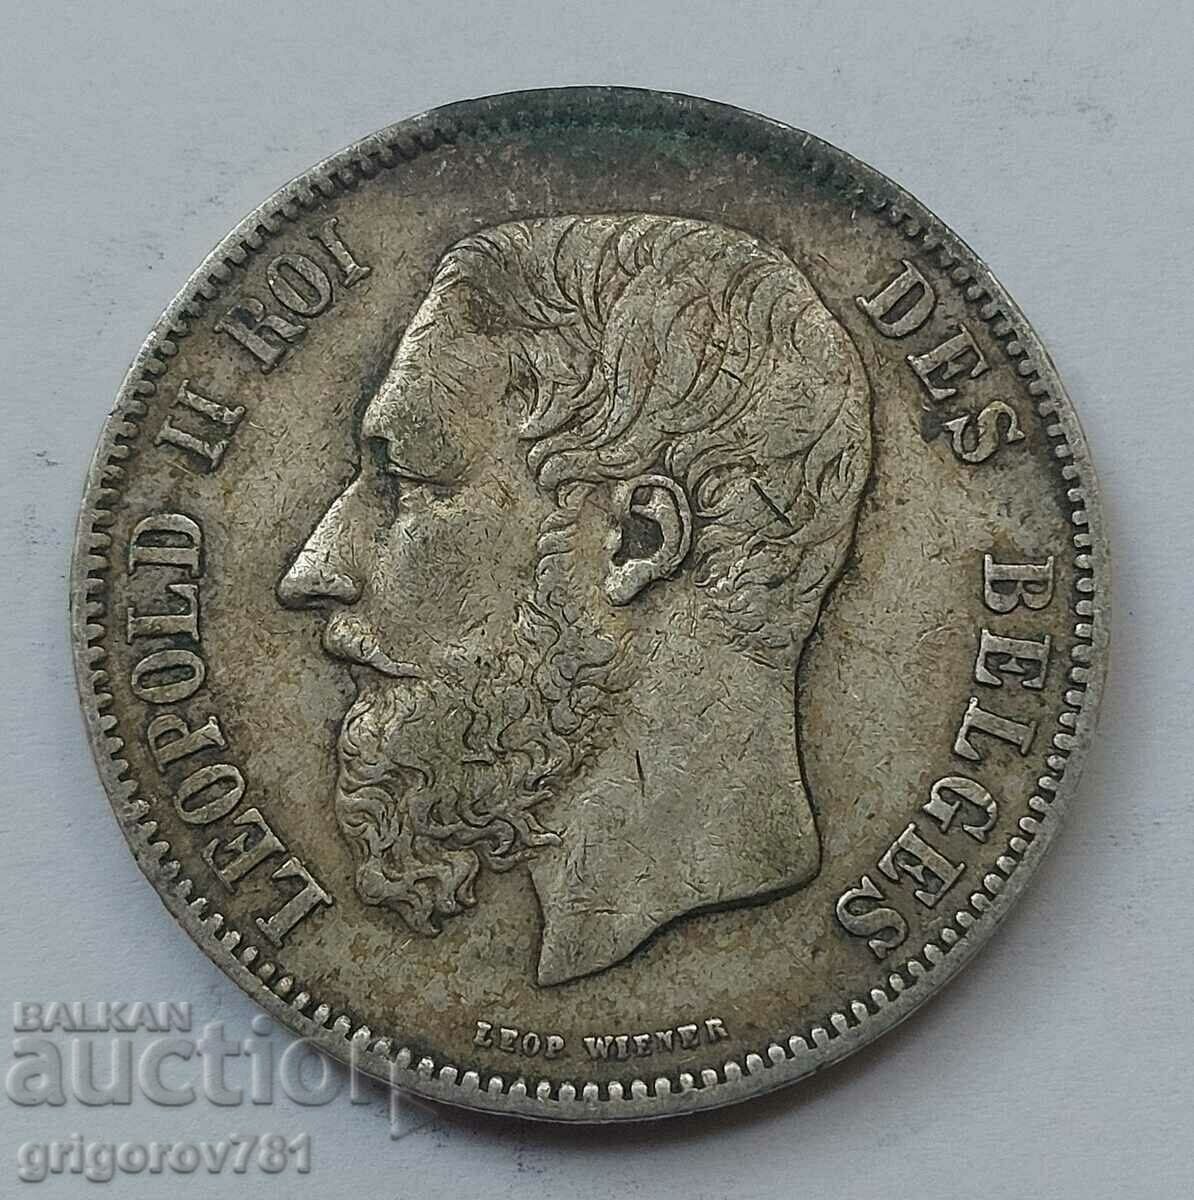 5 Francs Silver Belgium 1873 Silver Coin #176